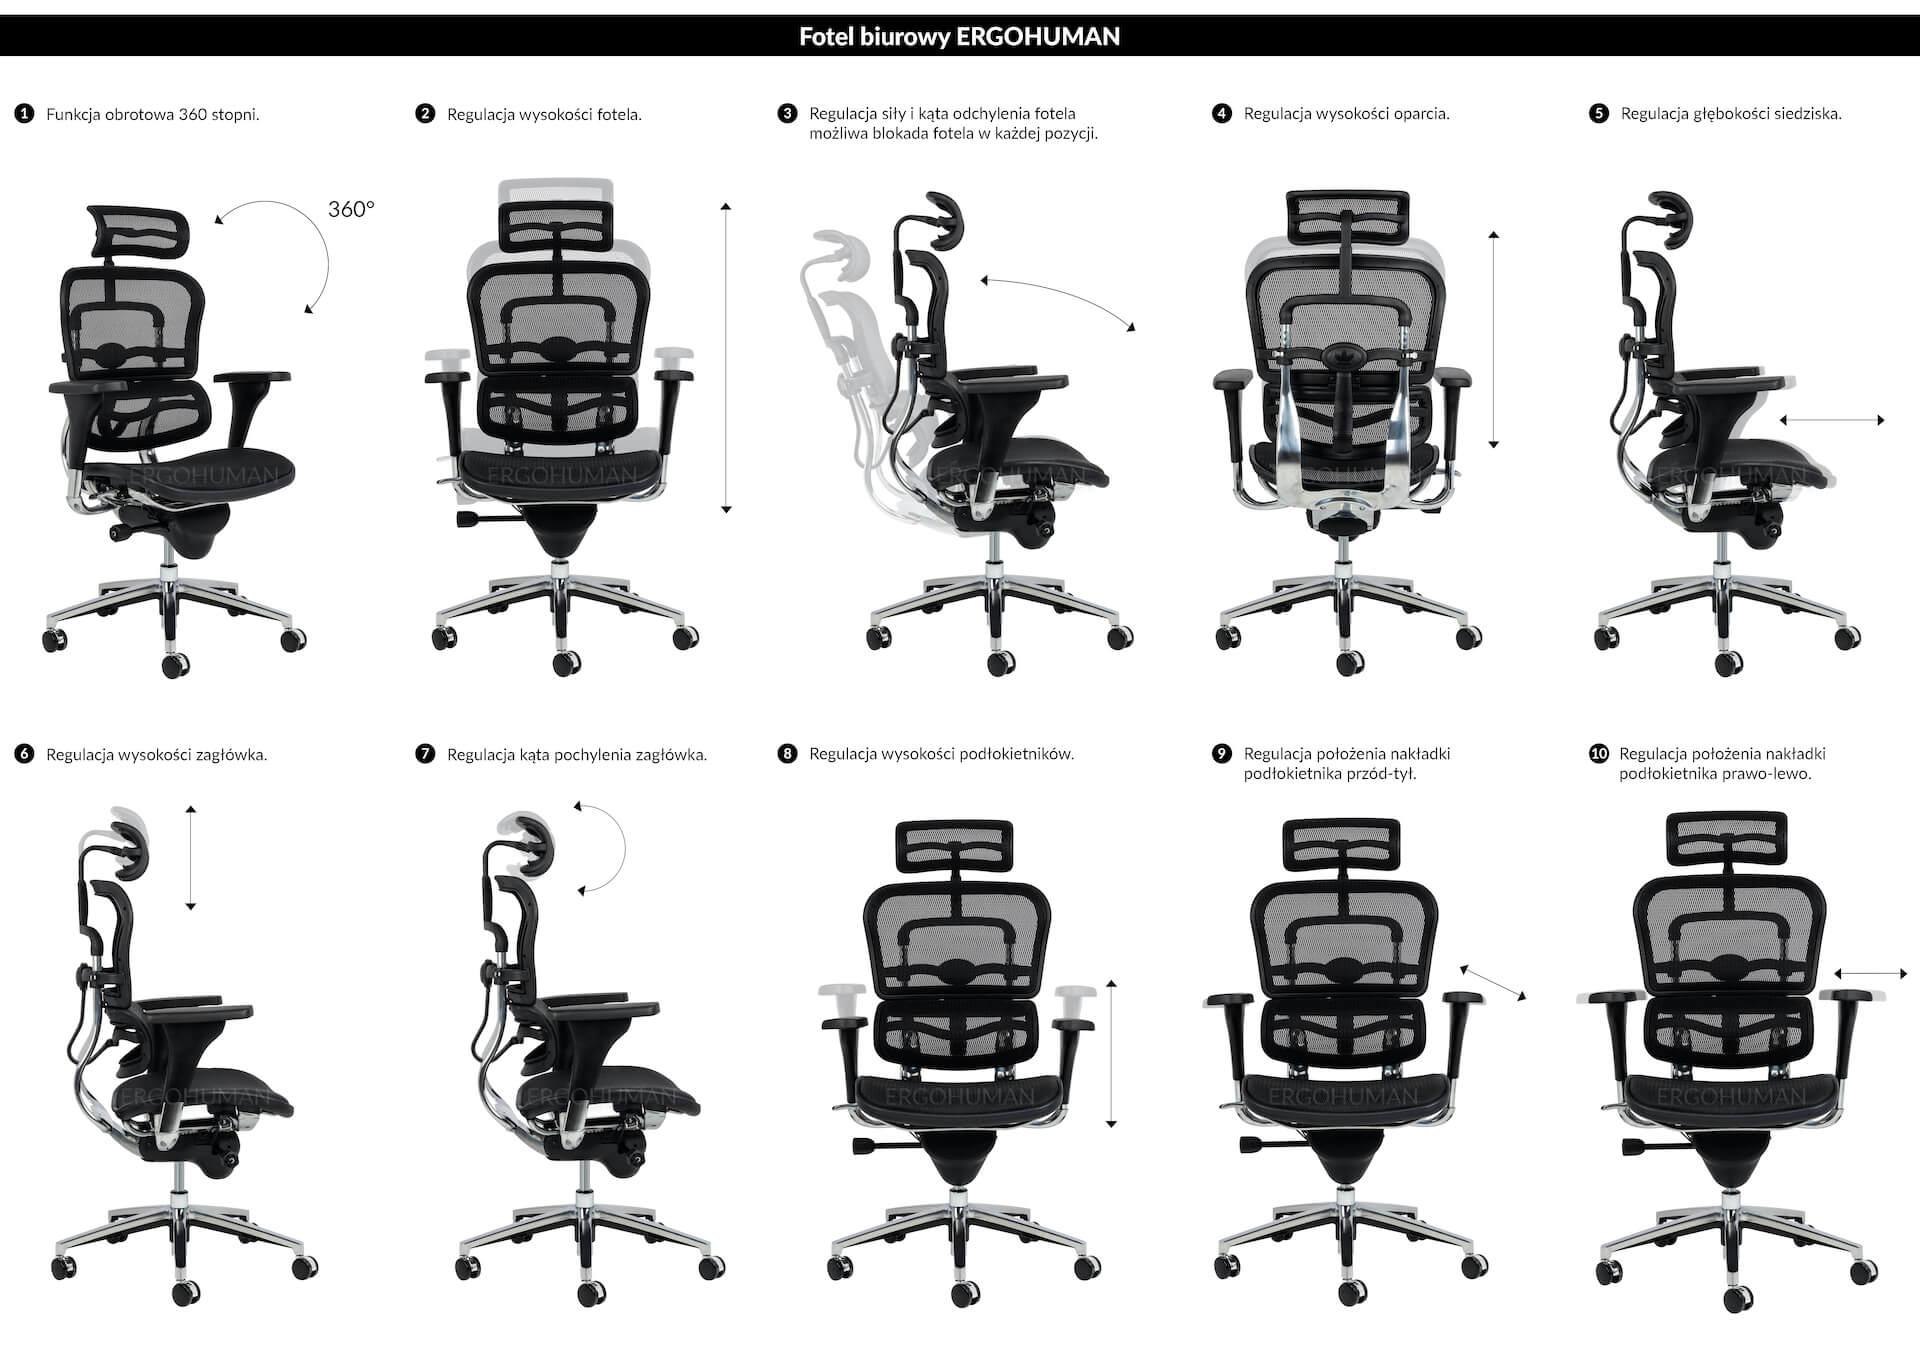 przykłady regulacji fotela ergonomicznego